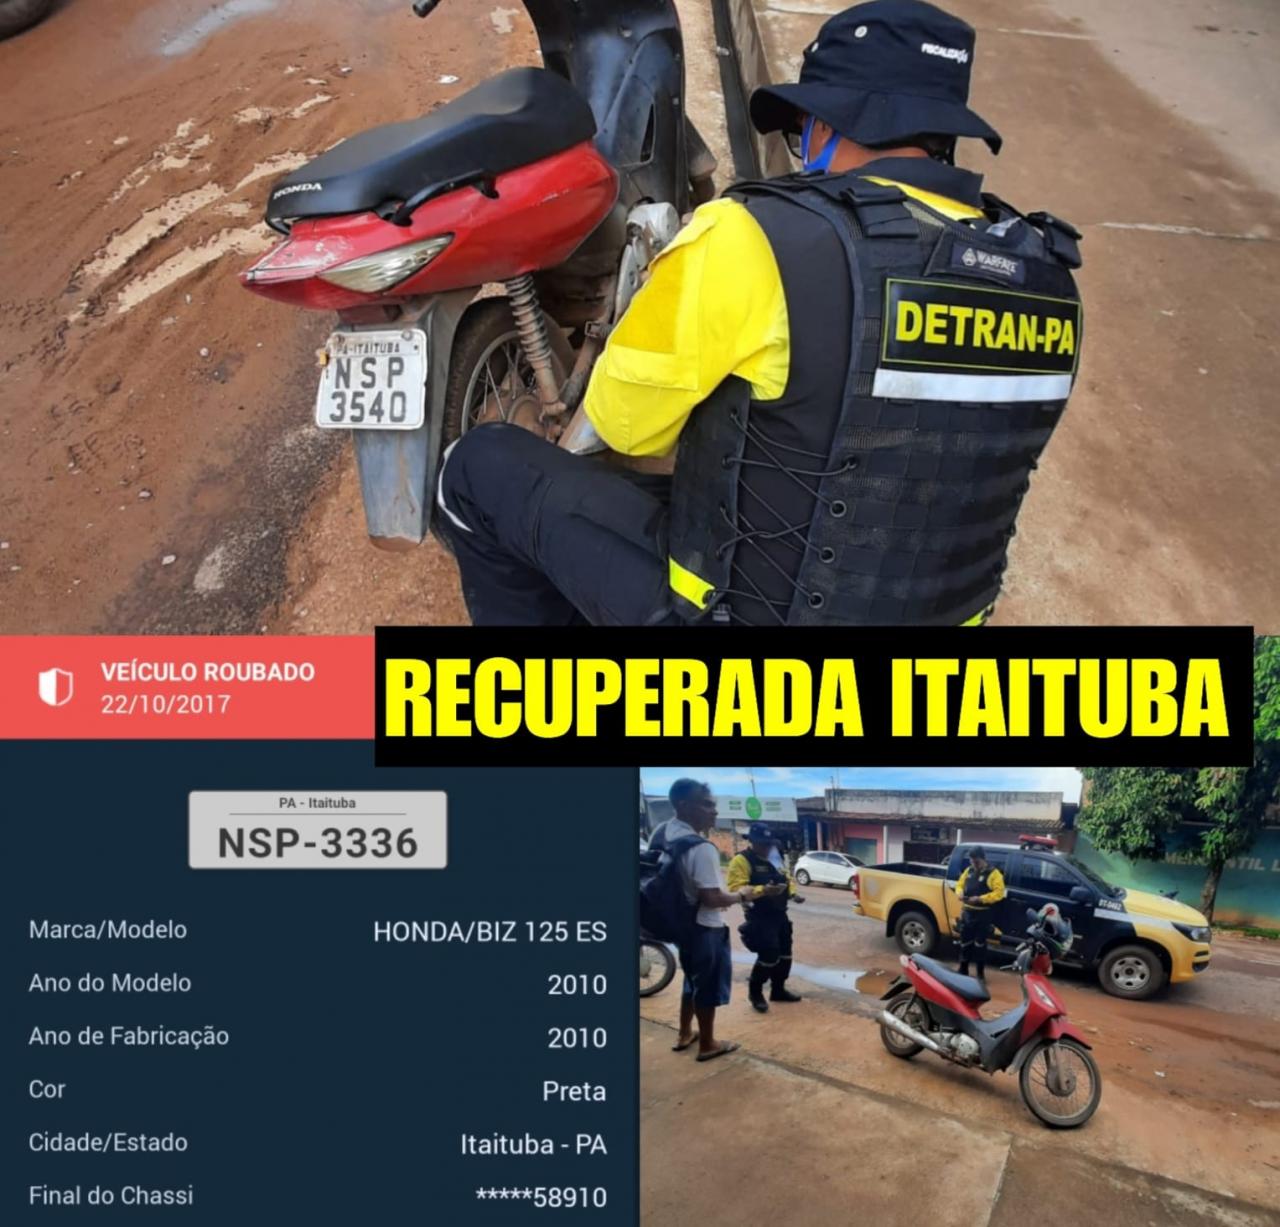 Detran-Pa recupera mais um veículo com registro de furto/roubo em Itaituba Pará